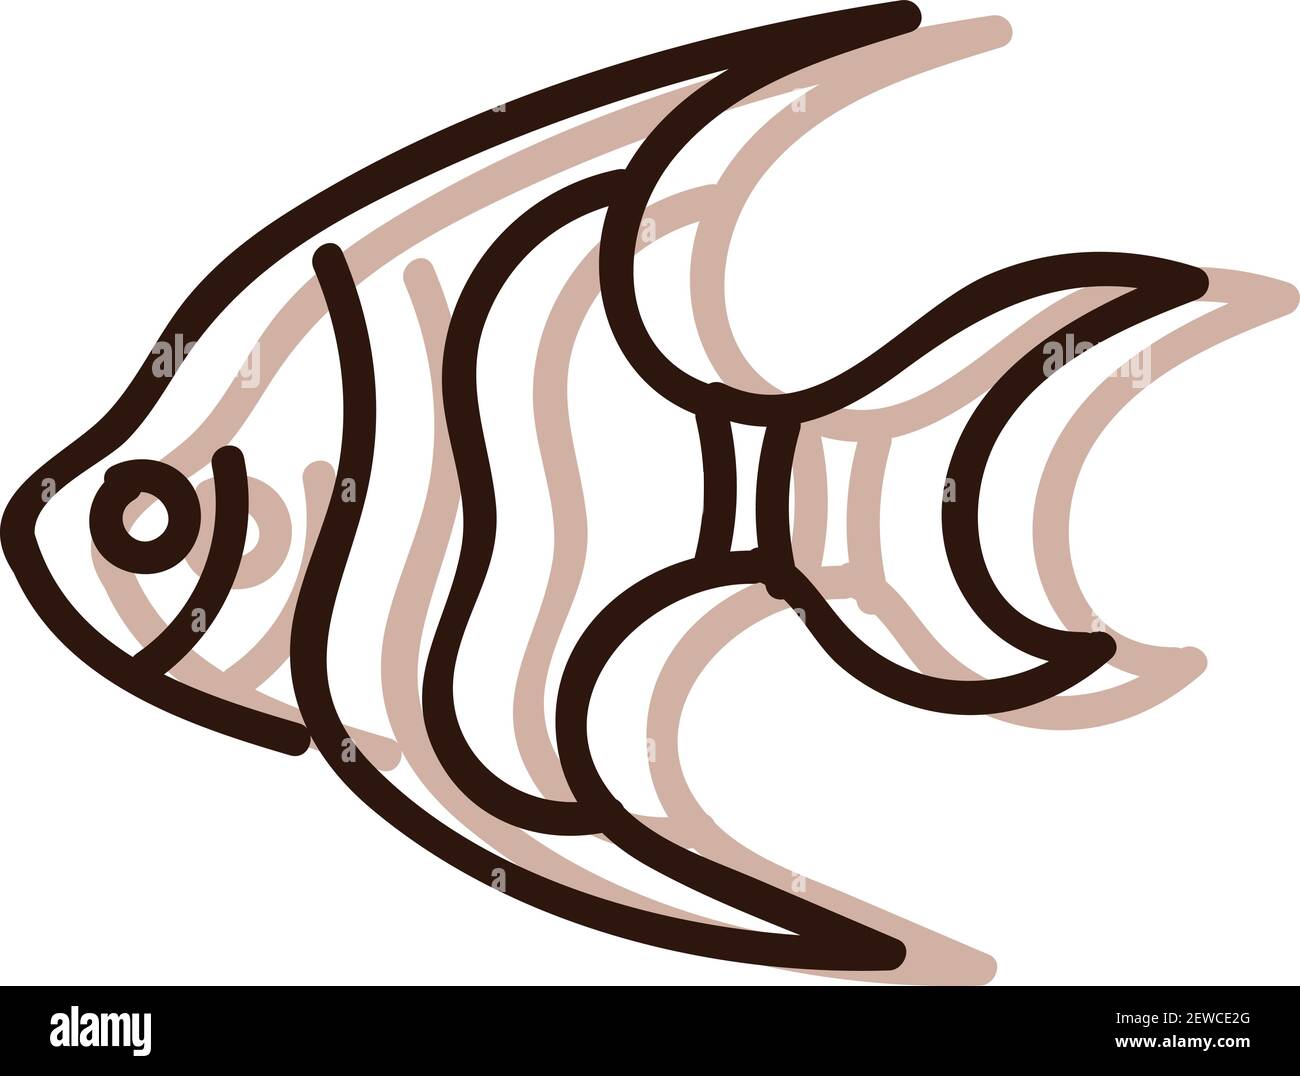 Poisson de mer, illustration, vecteur sur fond blanc. Illustration de Vecteur